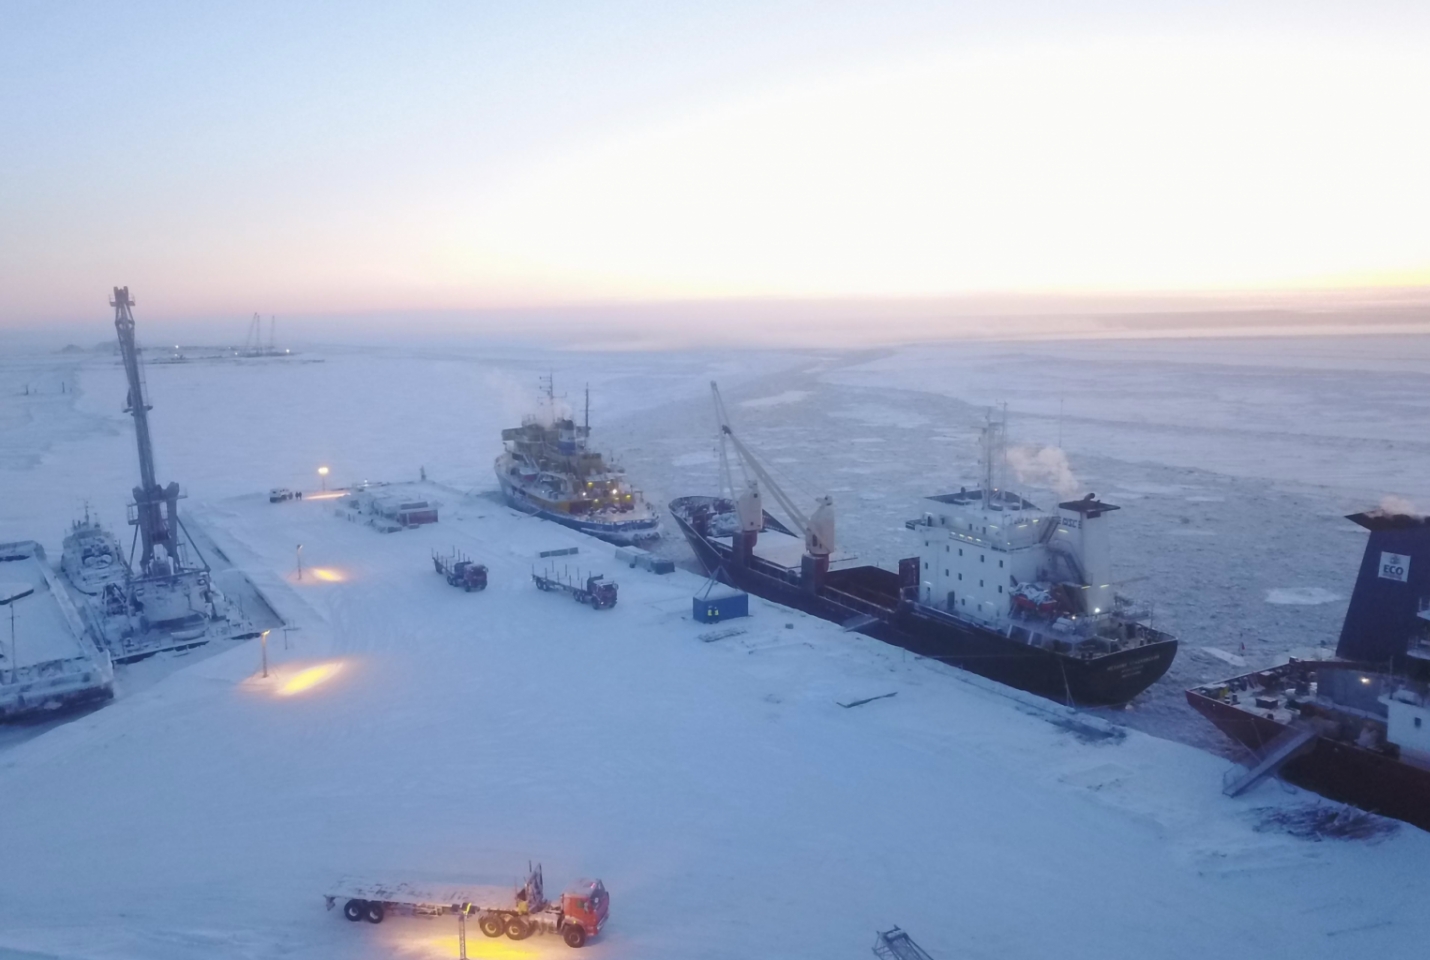 Bất chấp đại dịch, dự án LNG 2 ở Bắc Cực vẫn "hút" đầu tư “khủng”